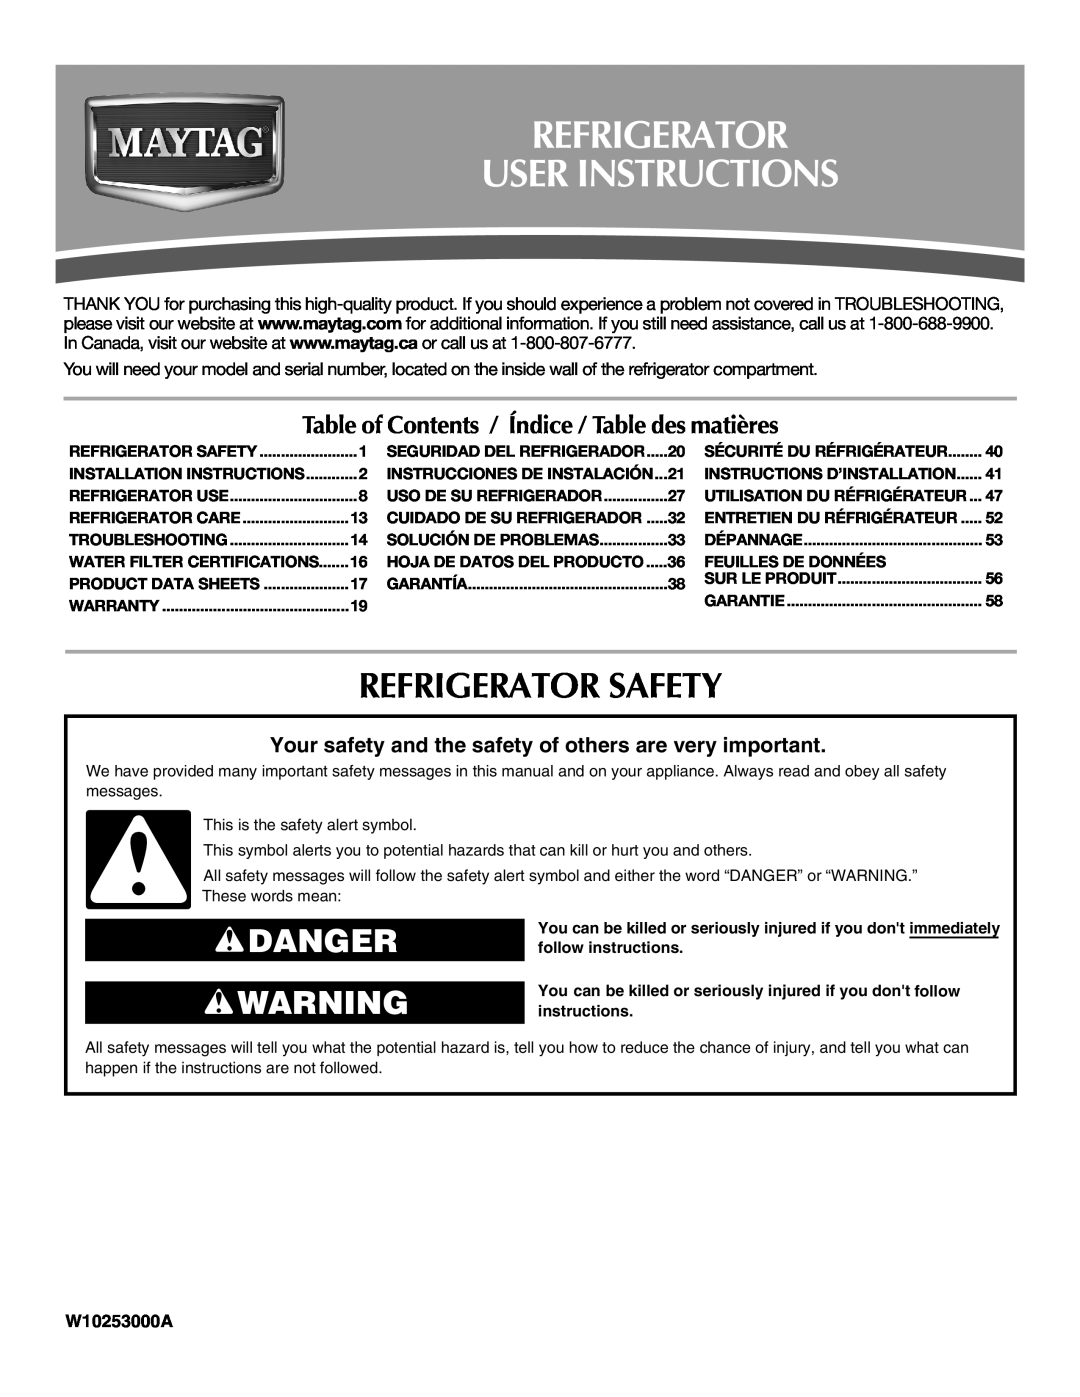 Maytag MFT2771WEM installation instructions Refrigerator User Instructions, Refrigerator Safety, Danger, W10253000A 